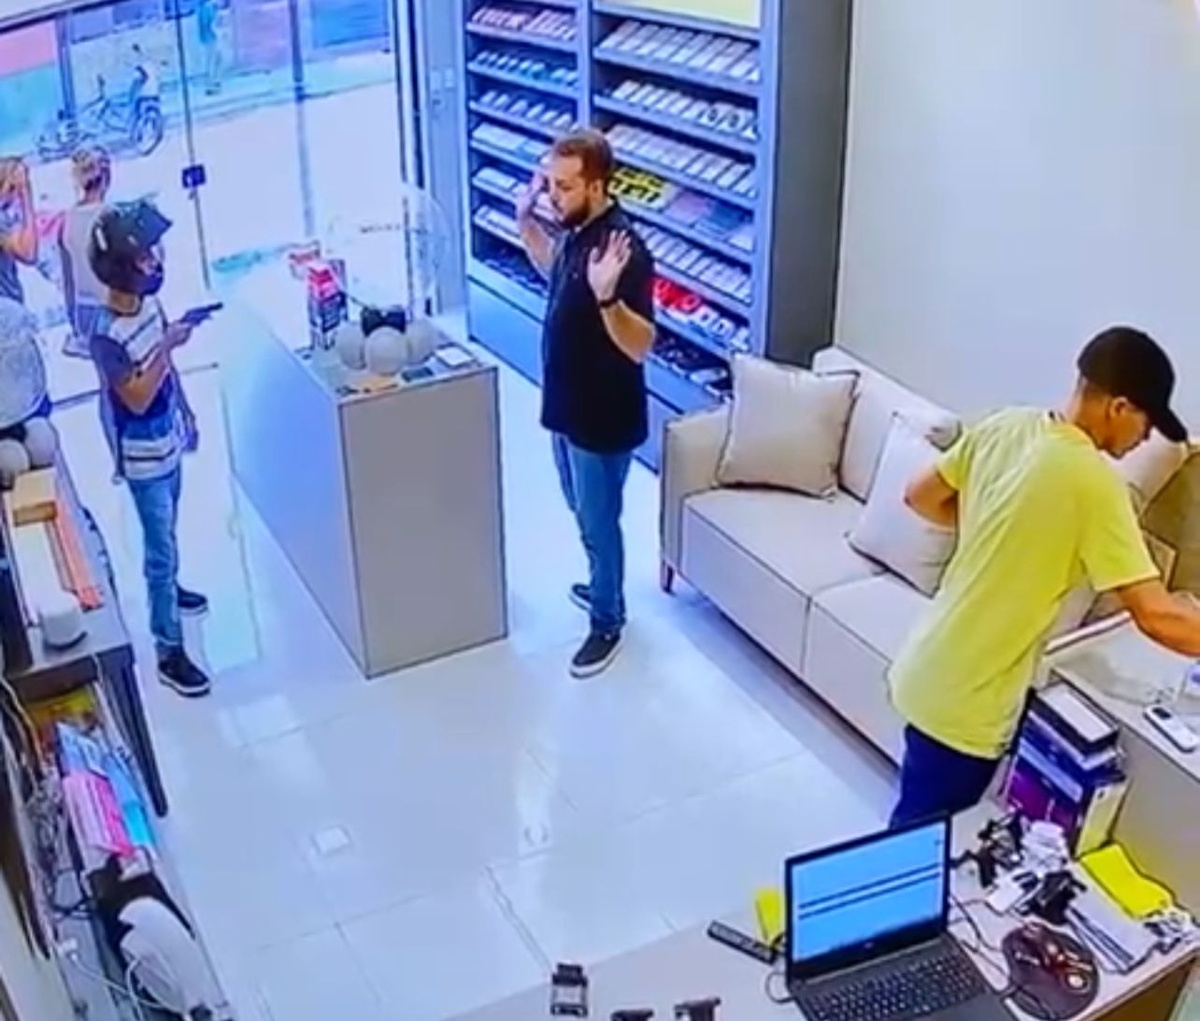 Assaltantes realizam arrastão em loja de eletrônicos na cidade de Campo Maior.